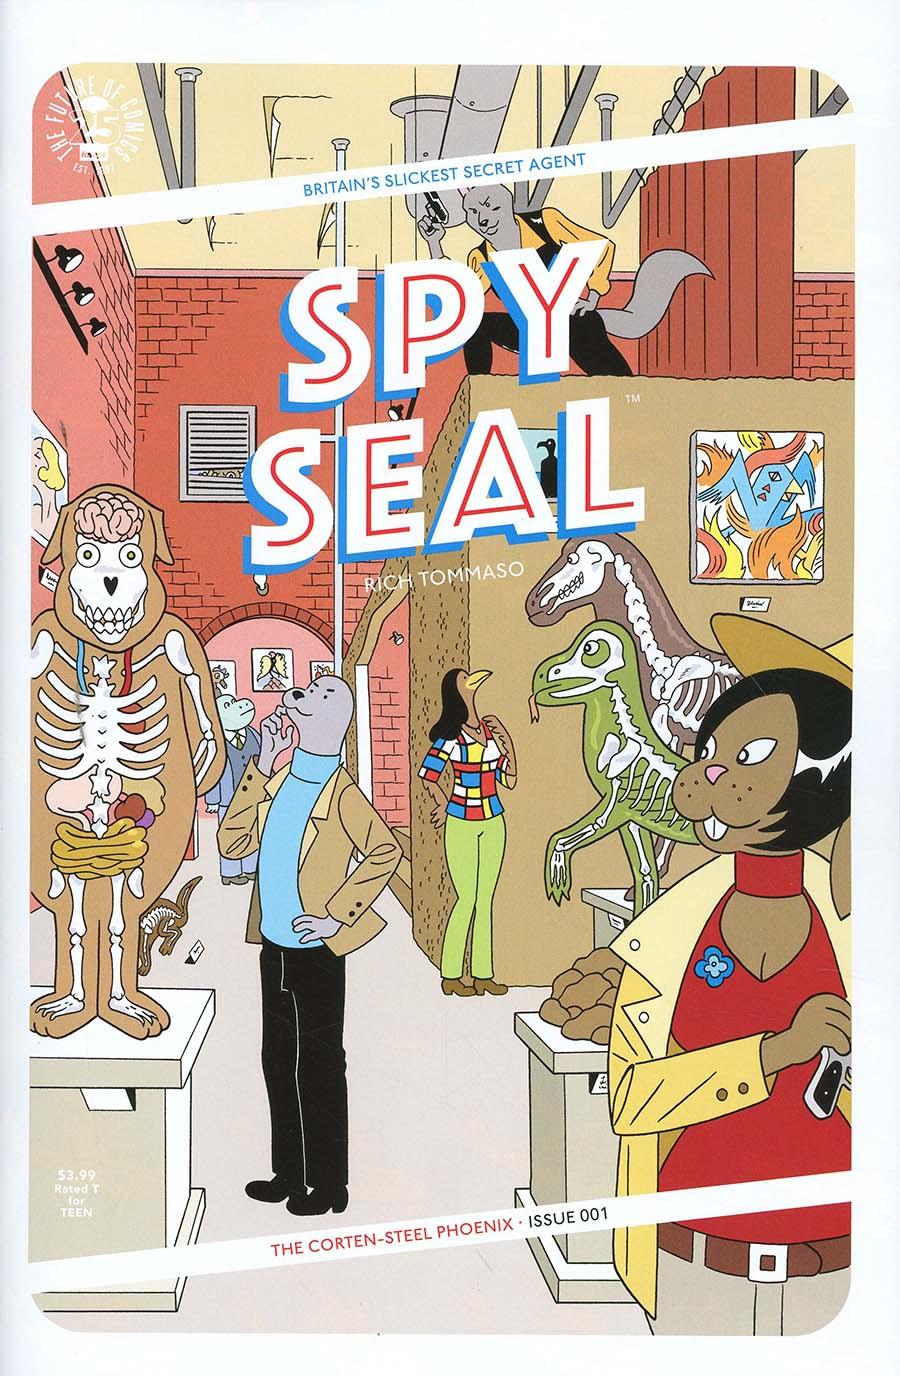 Spy Seal Vol. 1 #1